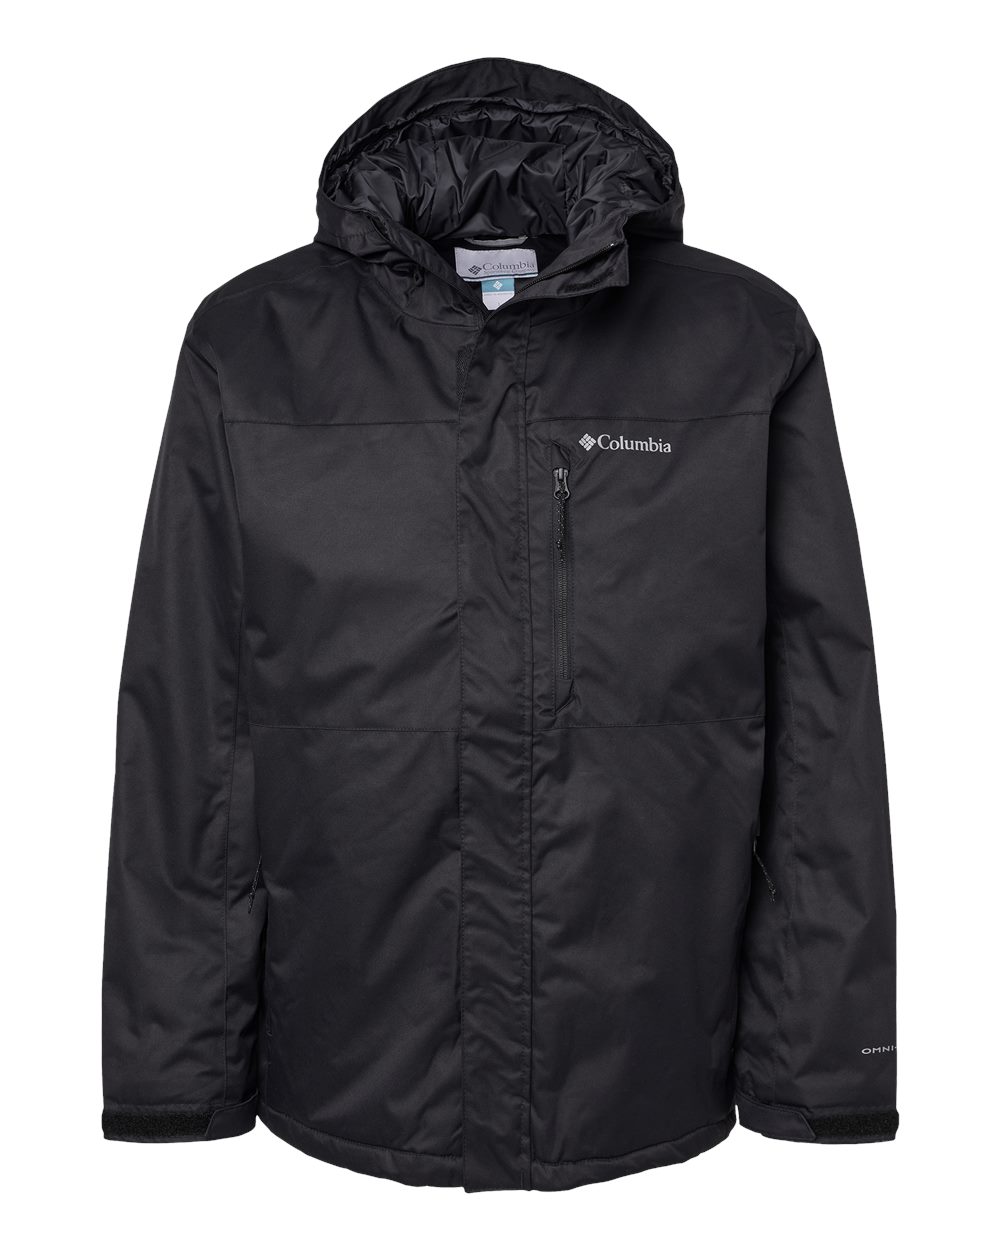 Columbia 201009 - Tipton Peak™ II Insulated Jacket